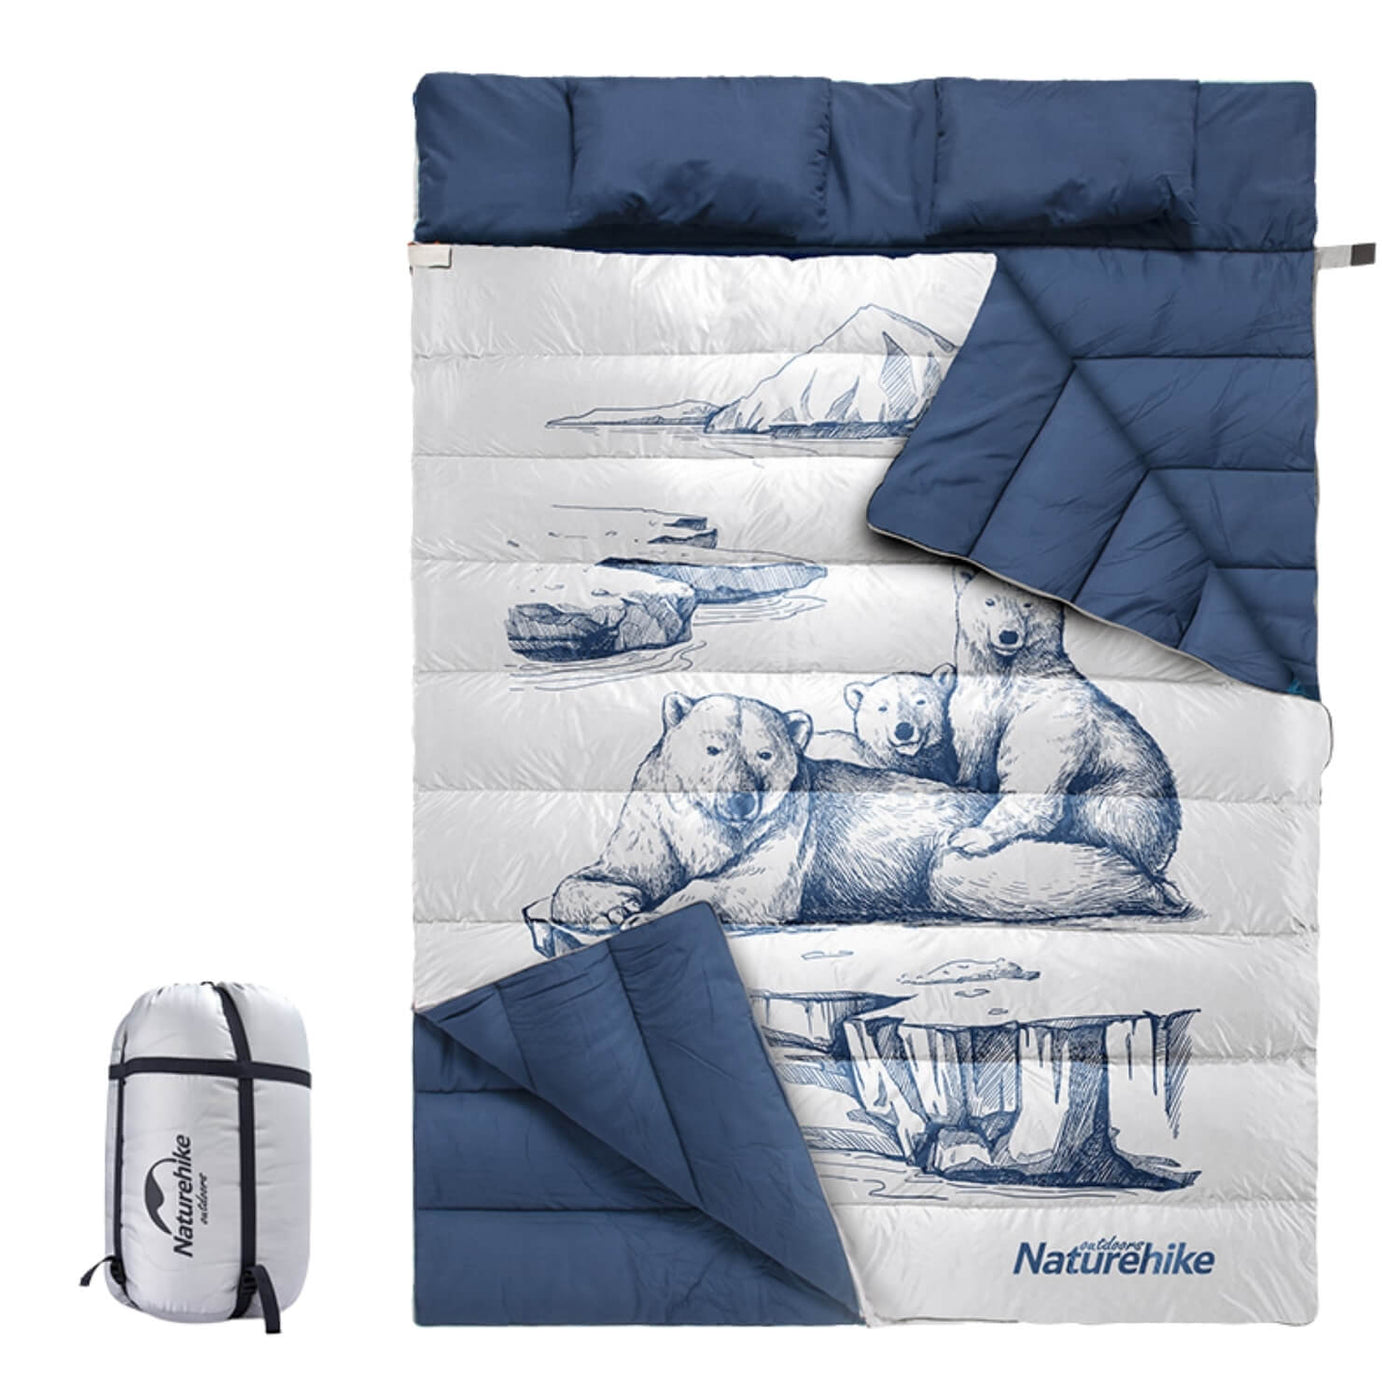 Double fleece sleeping bag with pillow